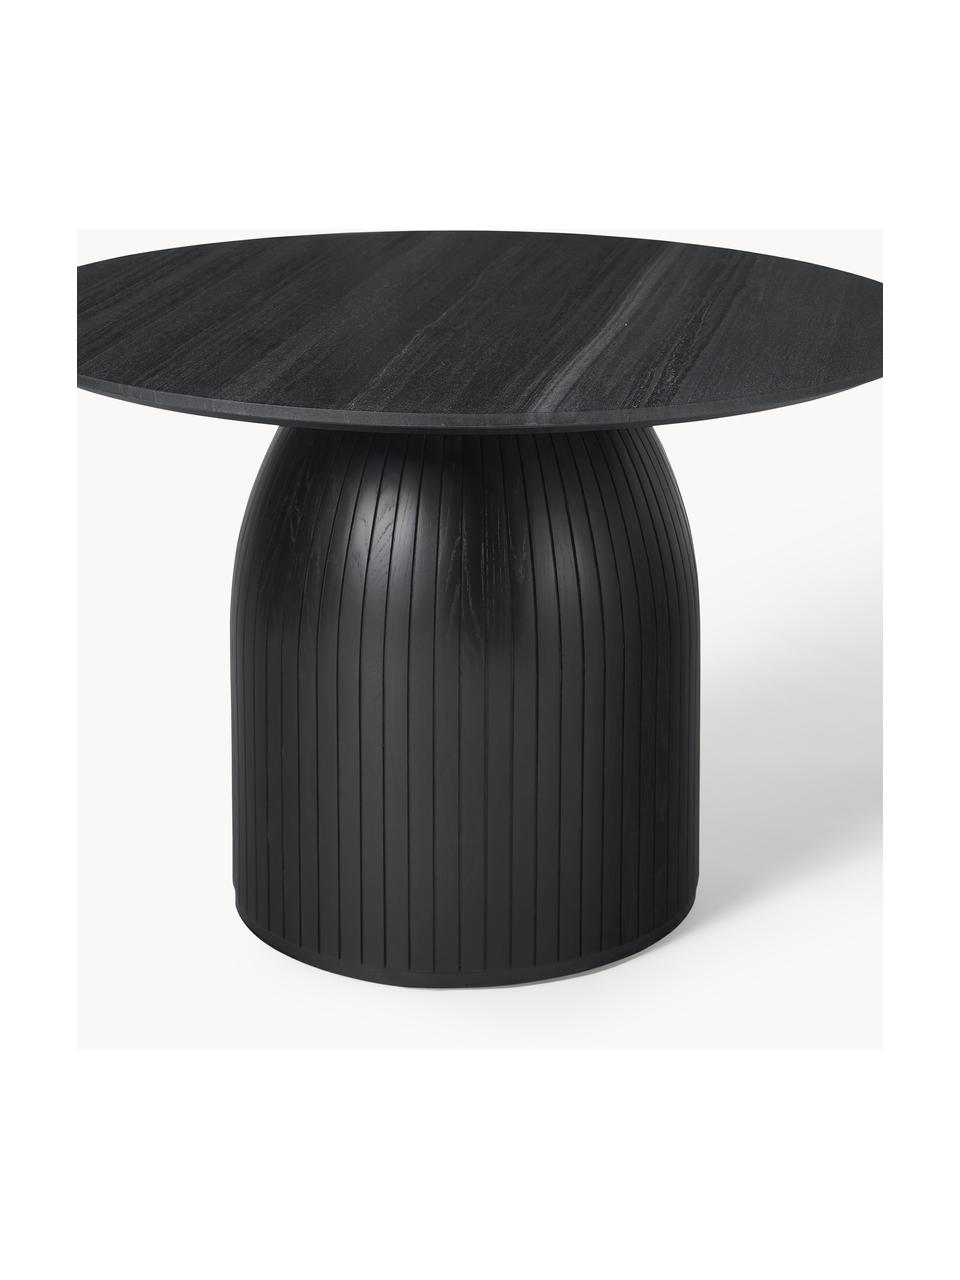 Runder Esstisch Nelly mit Marmor-Tischplatte, Ø 115 cm, Tischplatte: Marmor, Schwarz marmoriert, Schwarz, Ø 115 cm